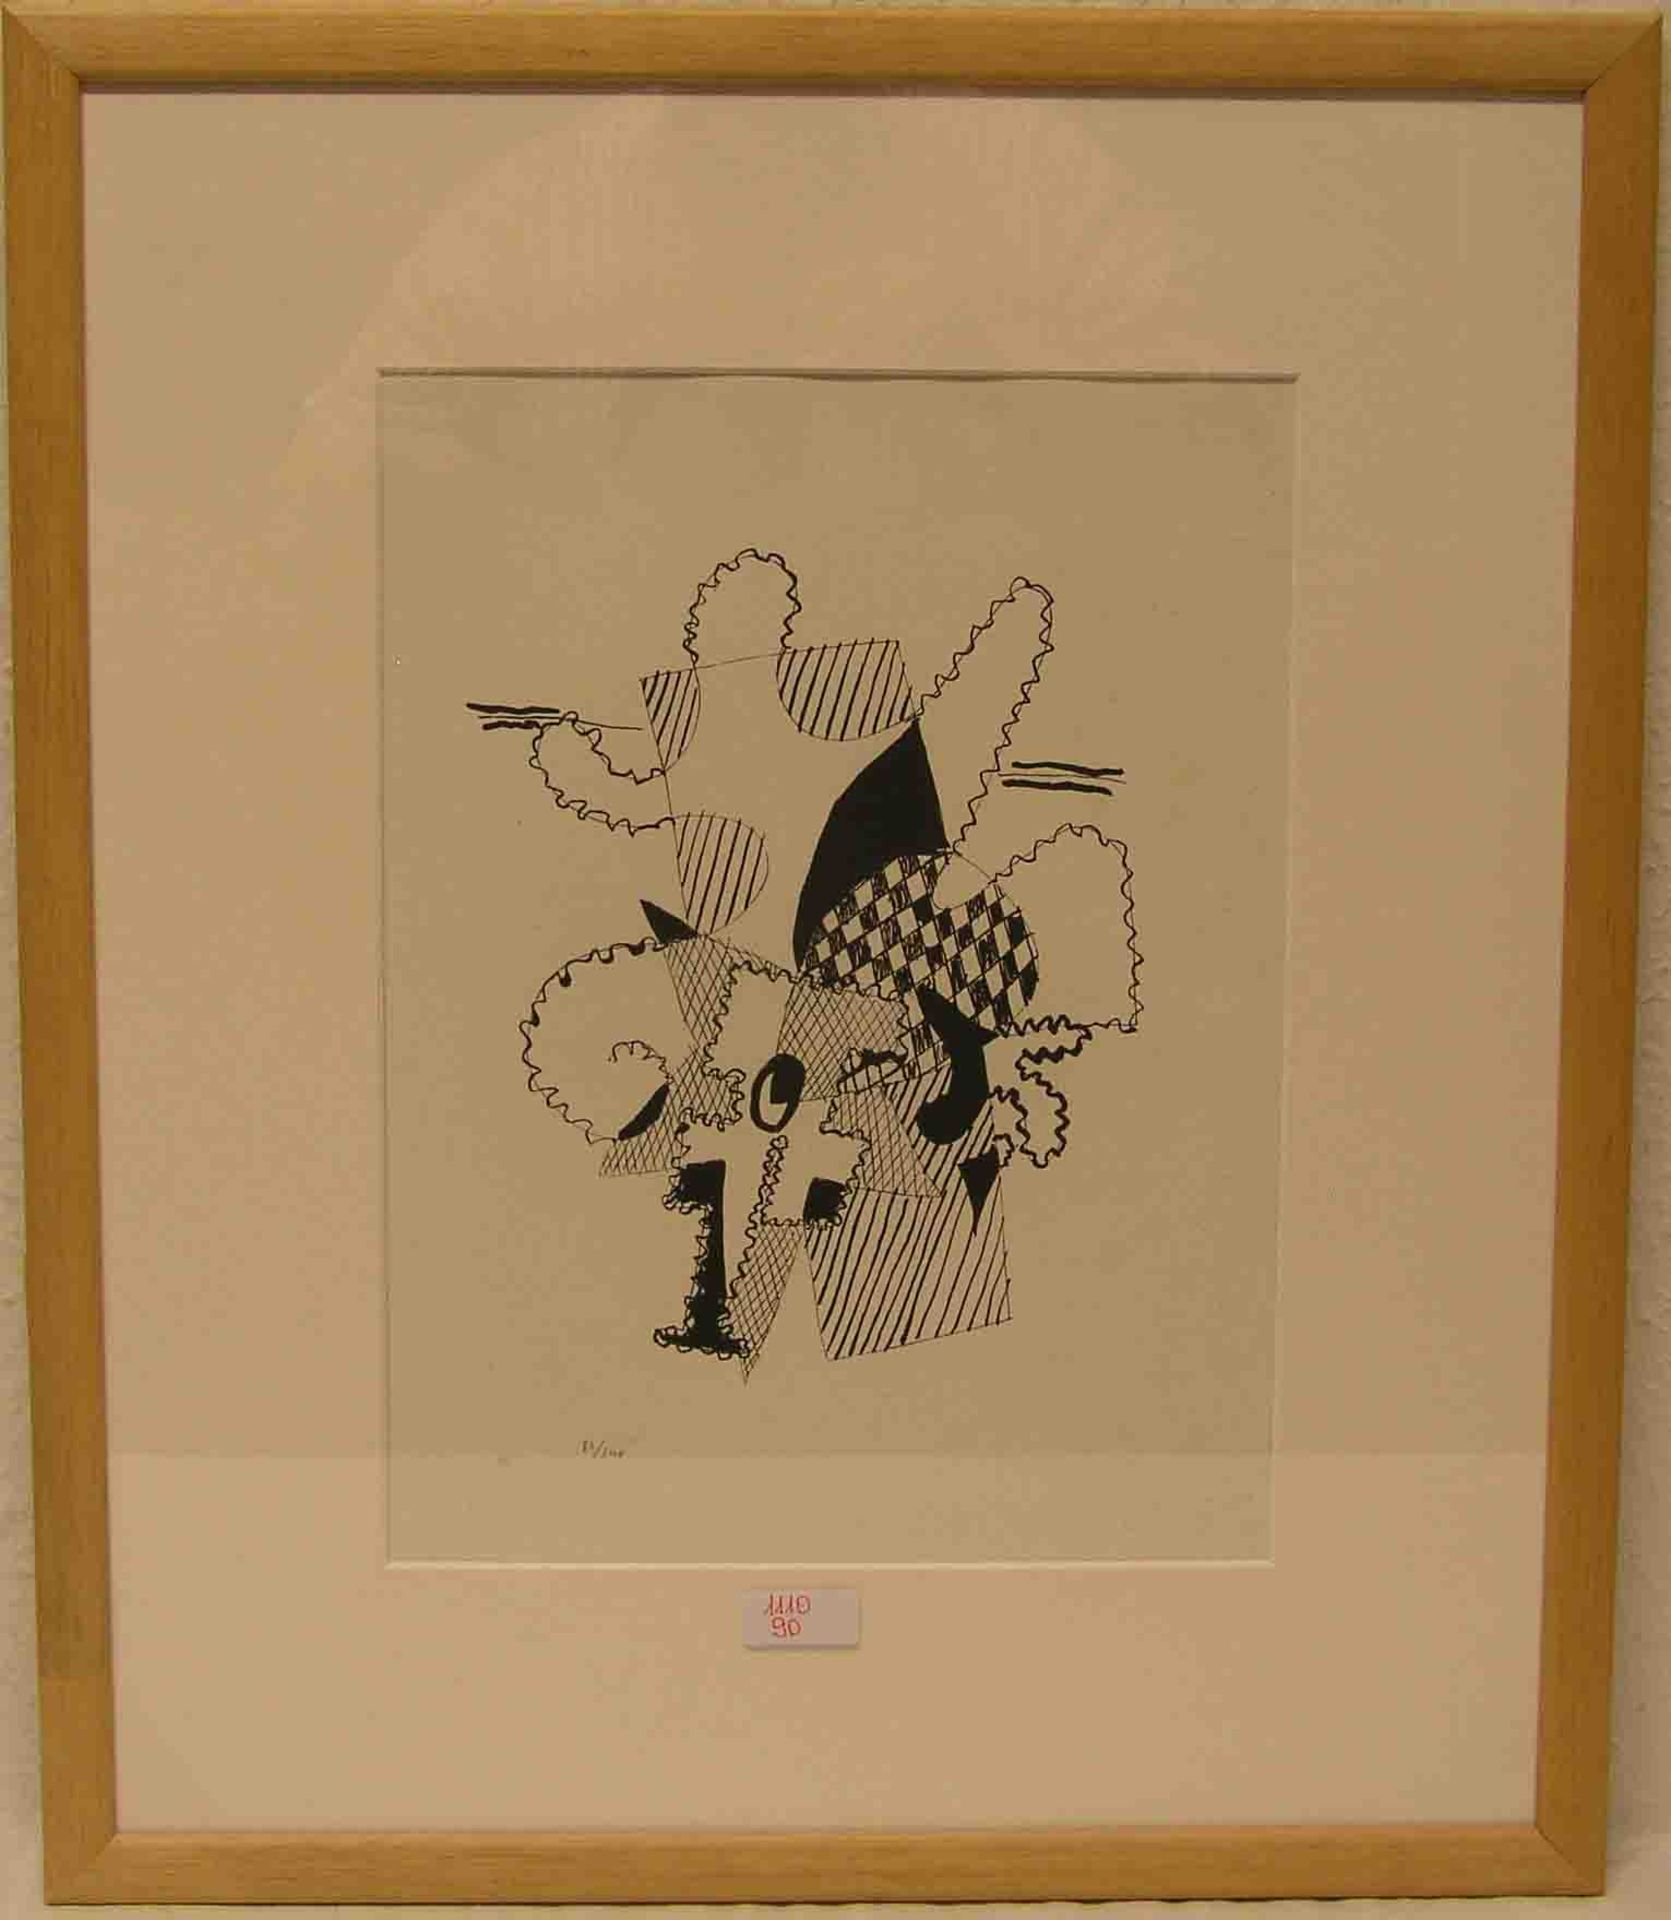 Picasso: "Espace relatif". Holzschnitt aus der Folge "Helene chez Archiméde", 1955.Gesamtauflage: